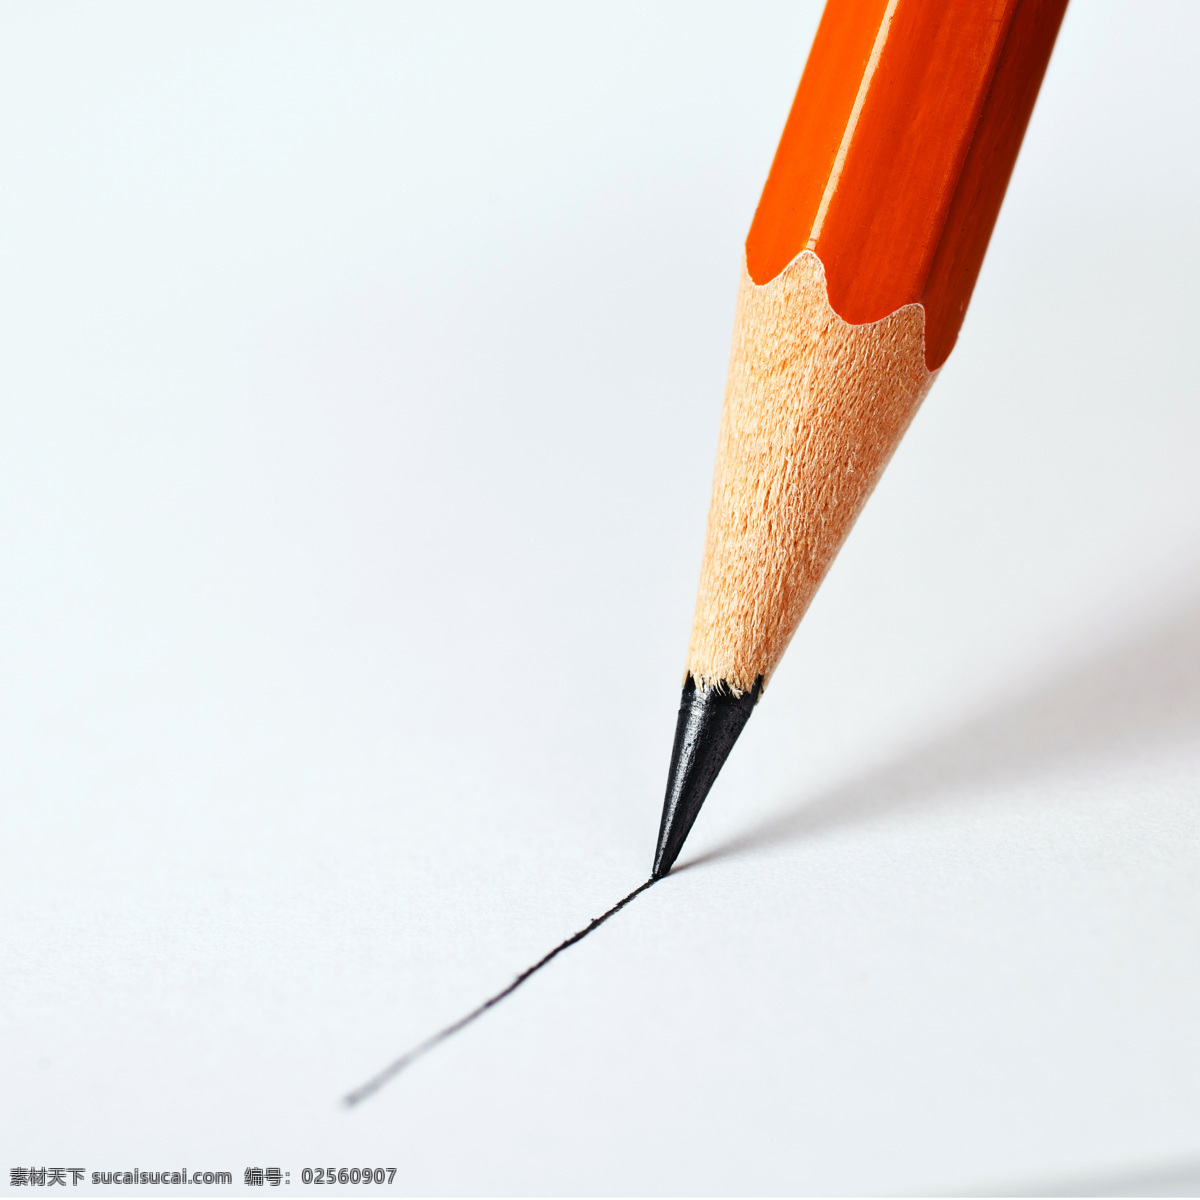 彩色铅笔 绘图笔 绘画 笔削 绘画笔 铅笔屑 学习用品 办公文具 生活百科 学习办公